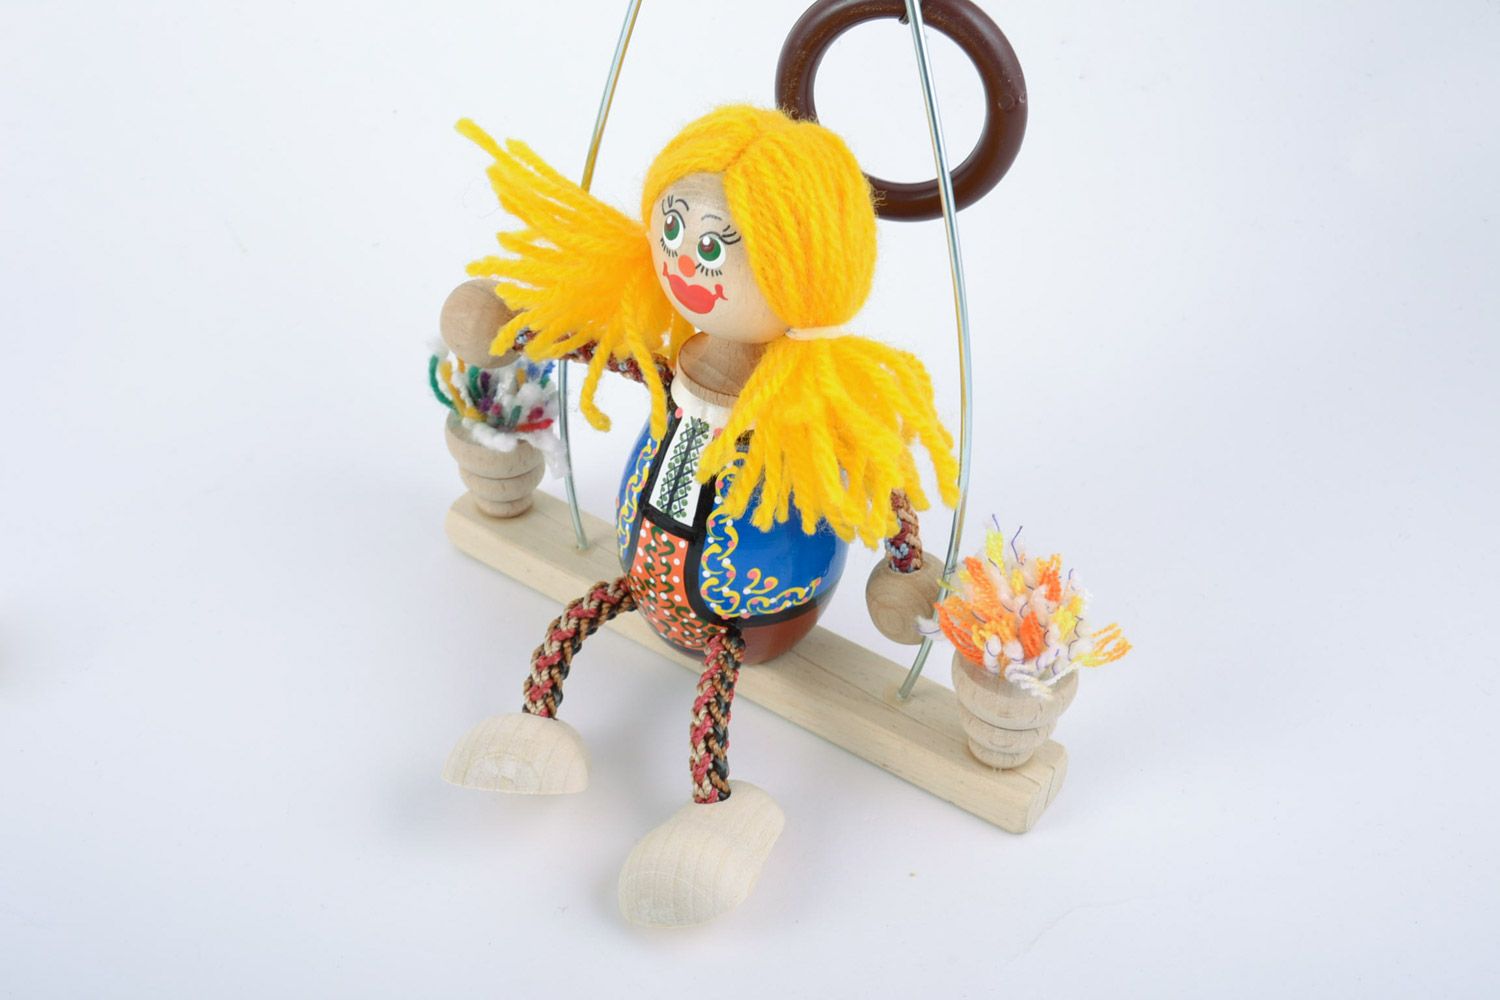 Hanmdade Öko Spielzeug aus Holz Mädchen auf Bank mit Bemalung samt unschädliche Farben foto 3